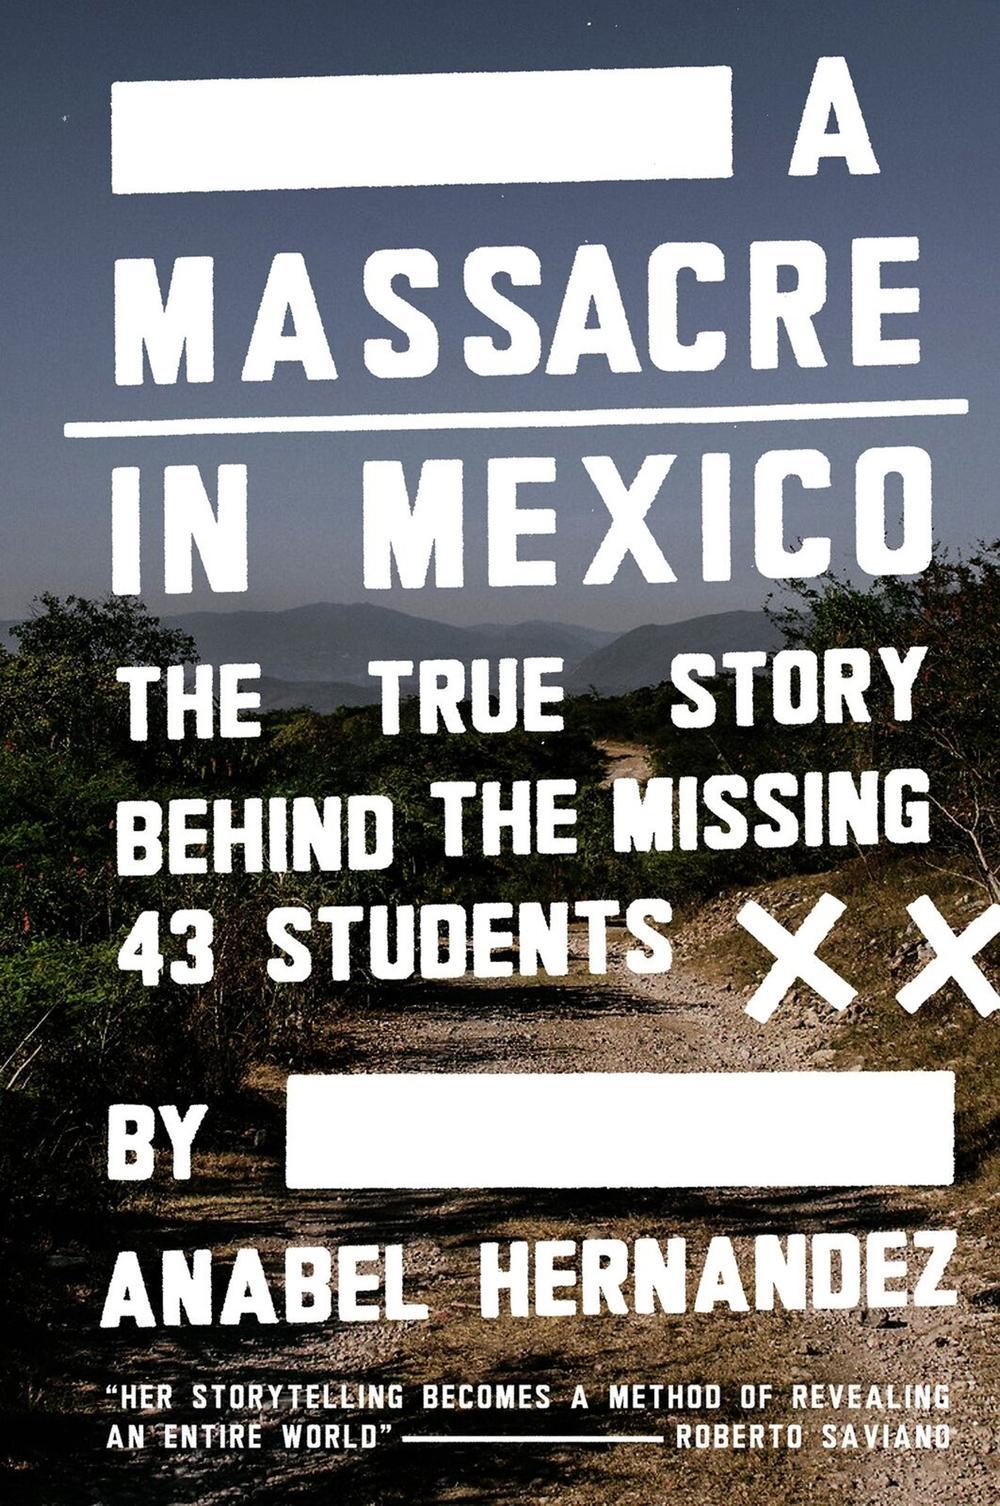 Massacre in Mexico